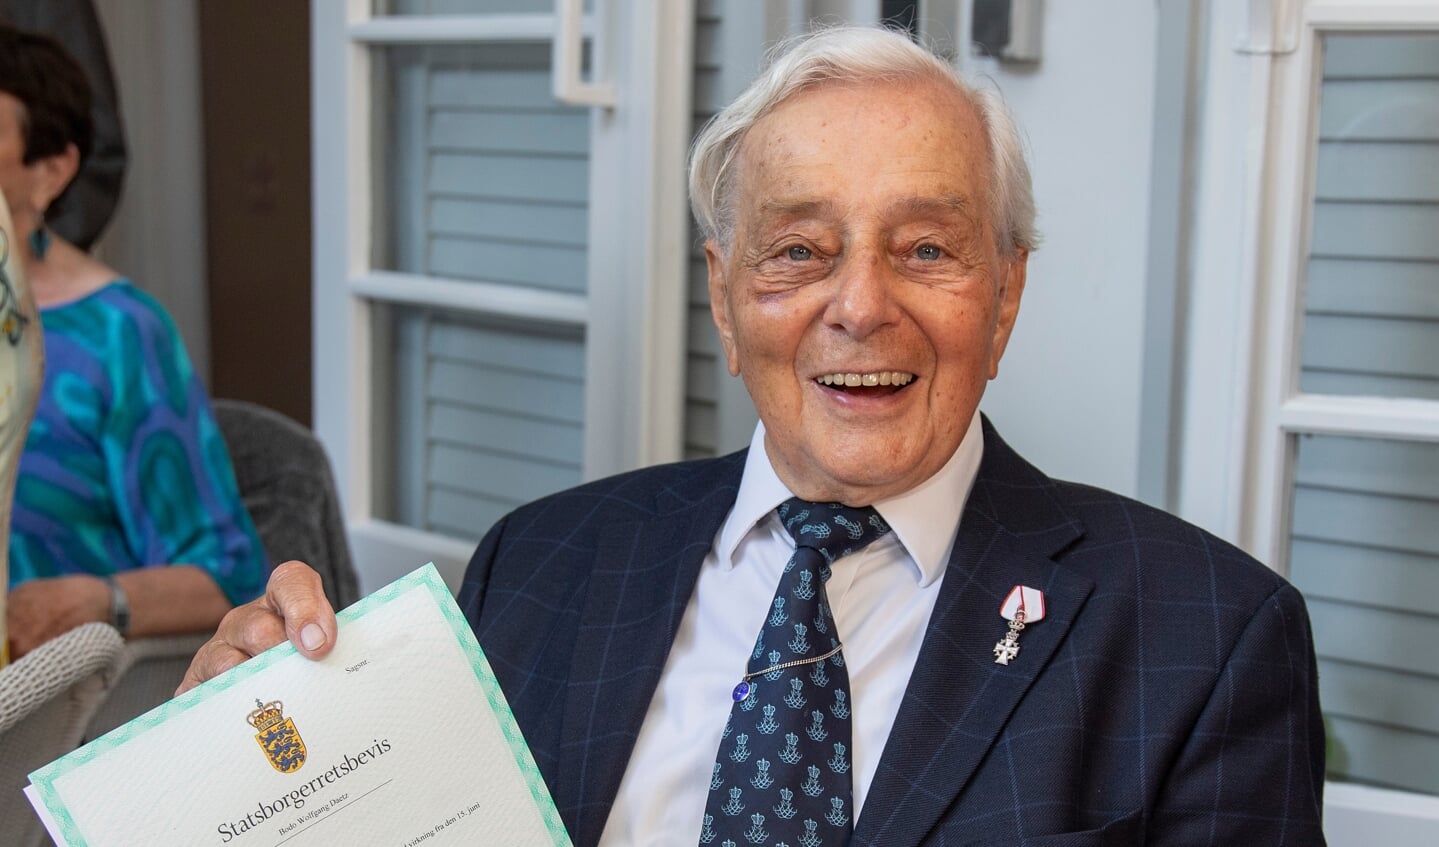 Bodo Daetz fik i en alder af 93 år overrakt beviset på sit danske statsborgerskab. Mandag fylder han 95 år.